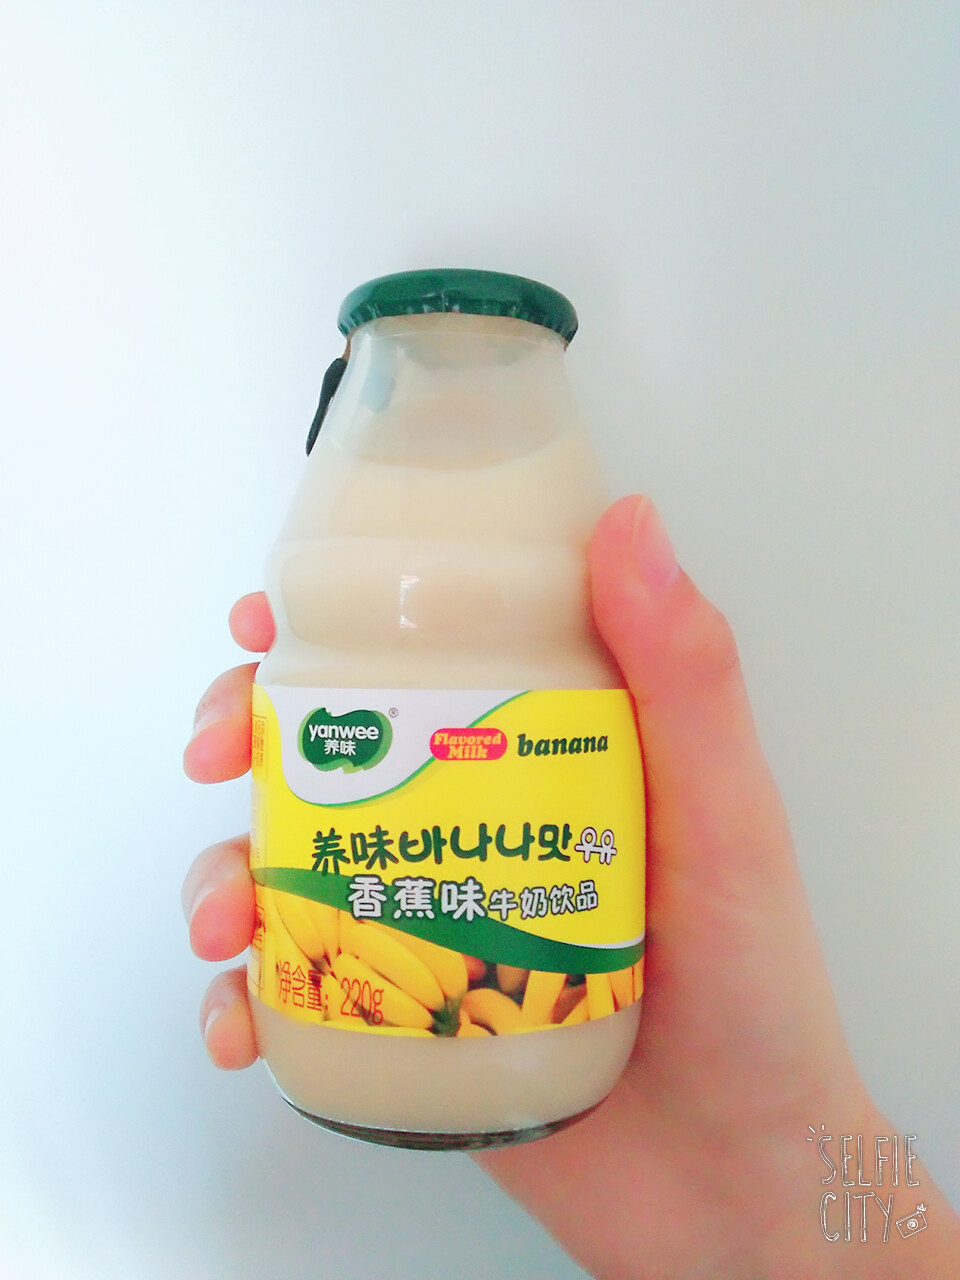 养味香蕉味牛奶饮品有四种口味:哈密瓜,香蕉,原味,还有椰子(拢月认为